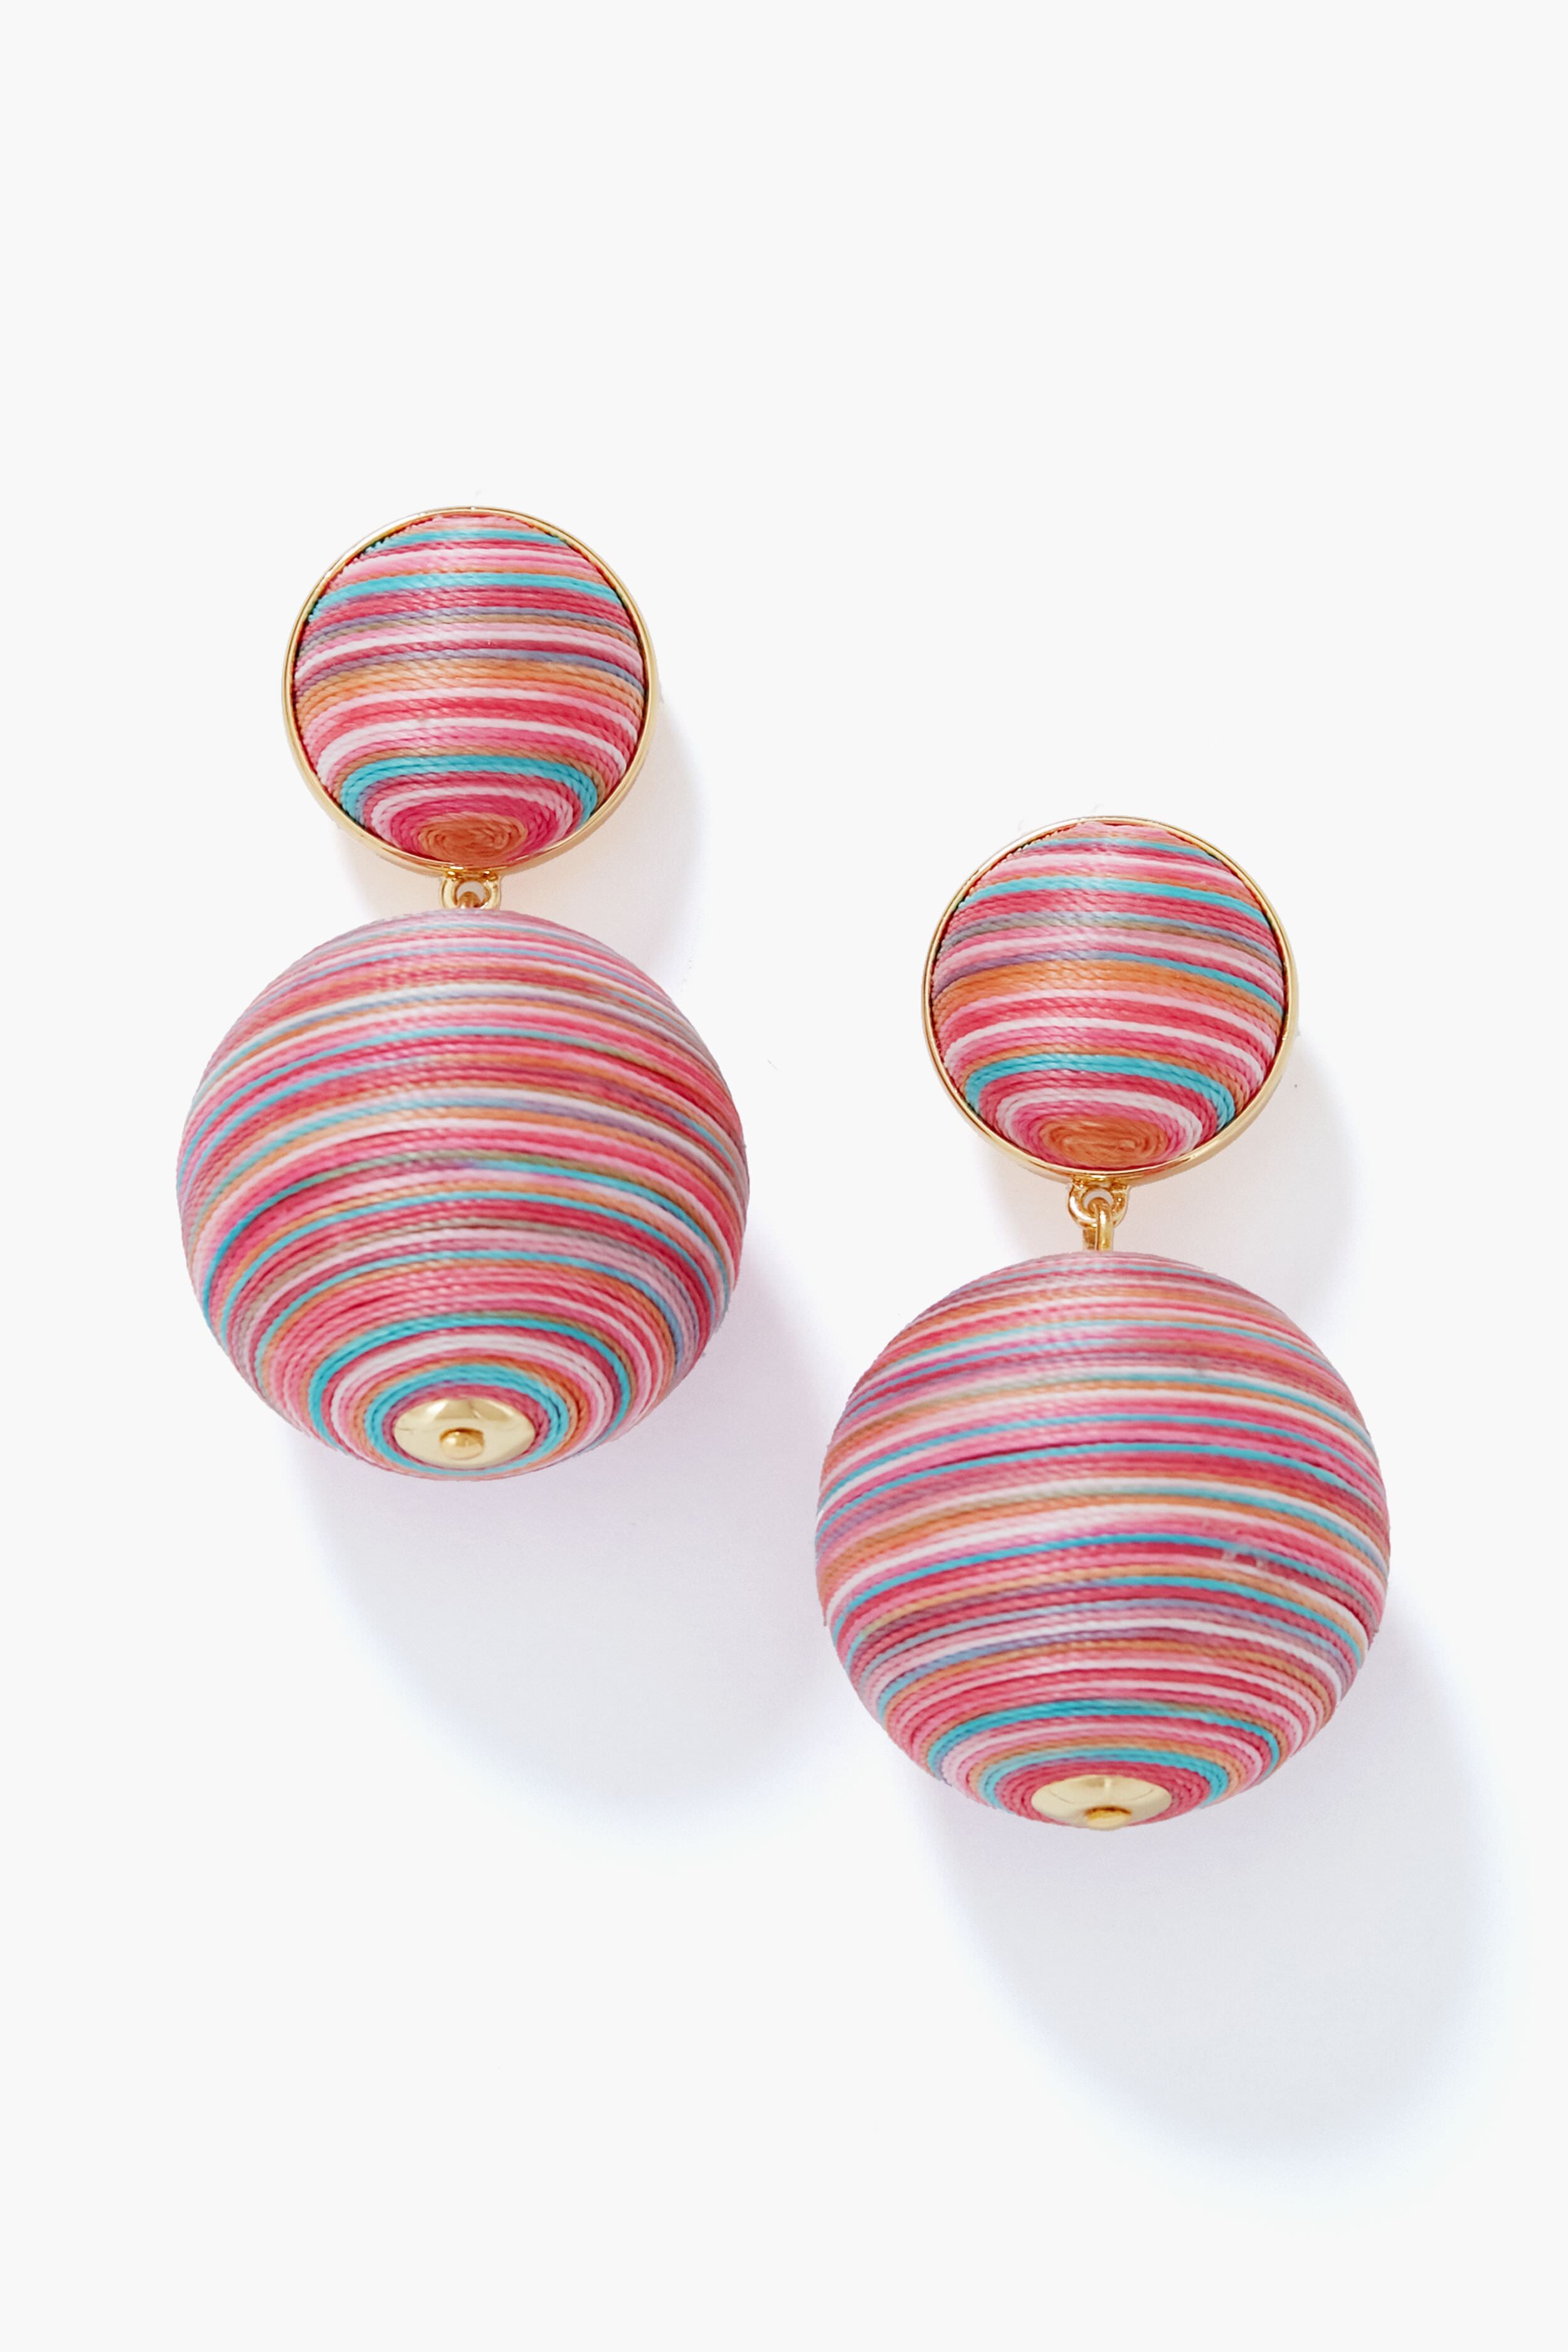 Tuckernuck Jewelry Striped Rainbow Lantern Earrings